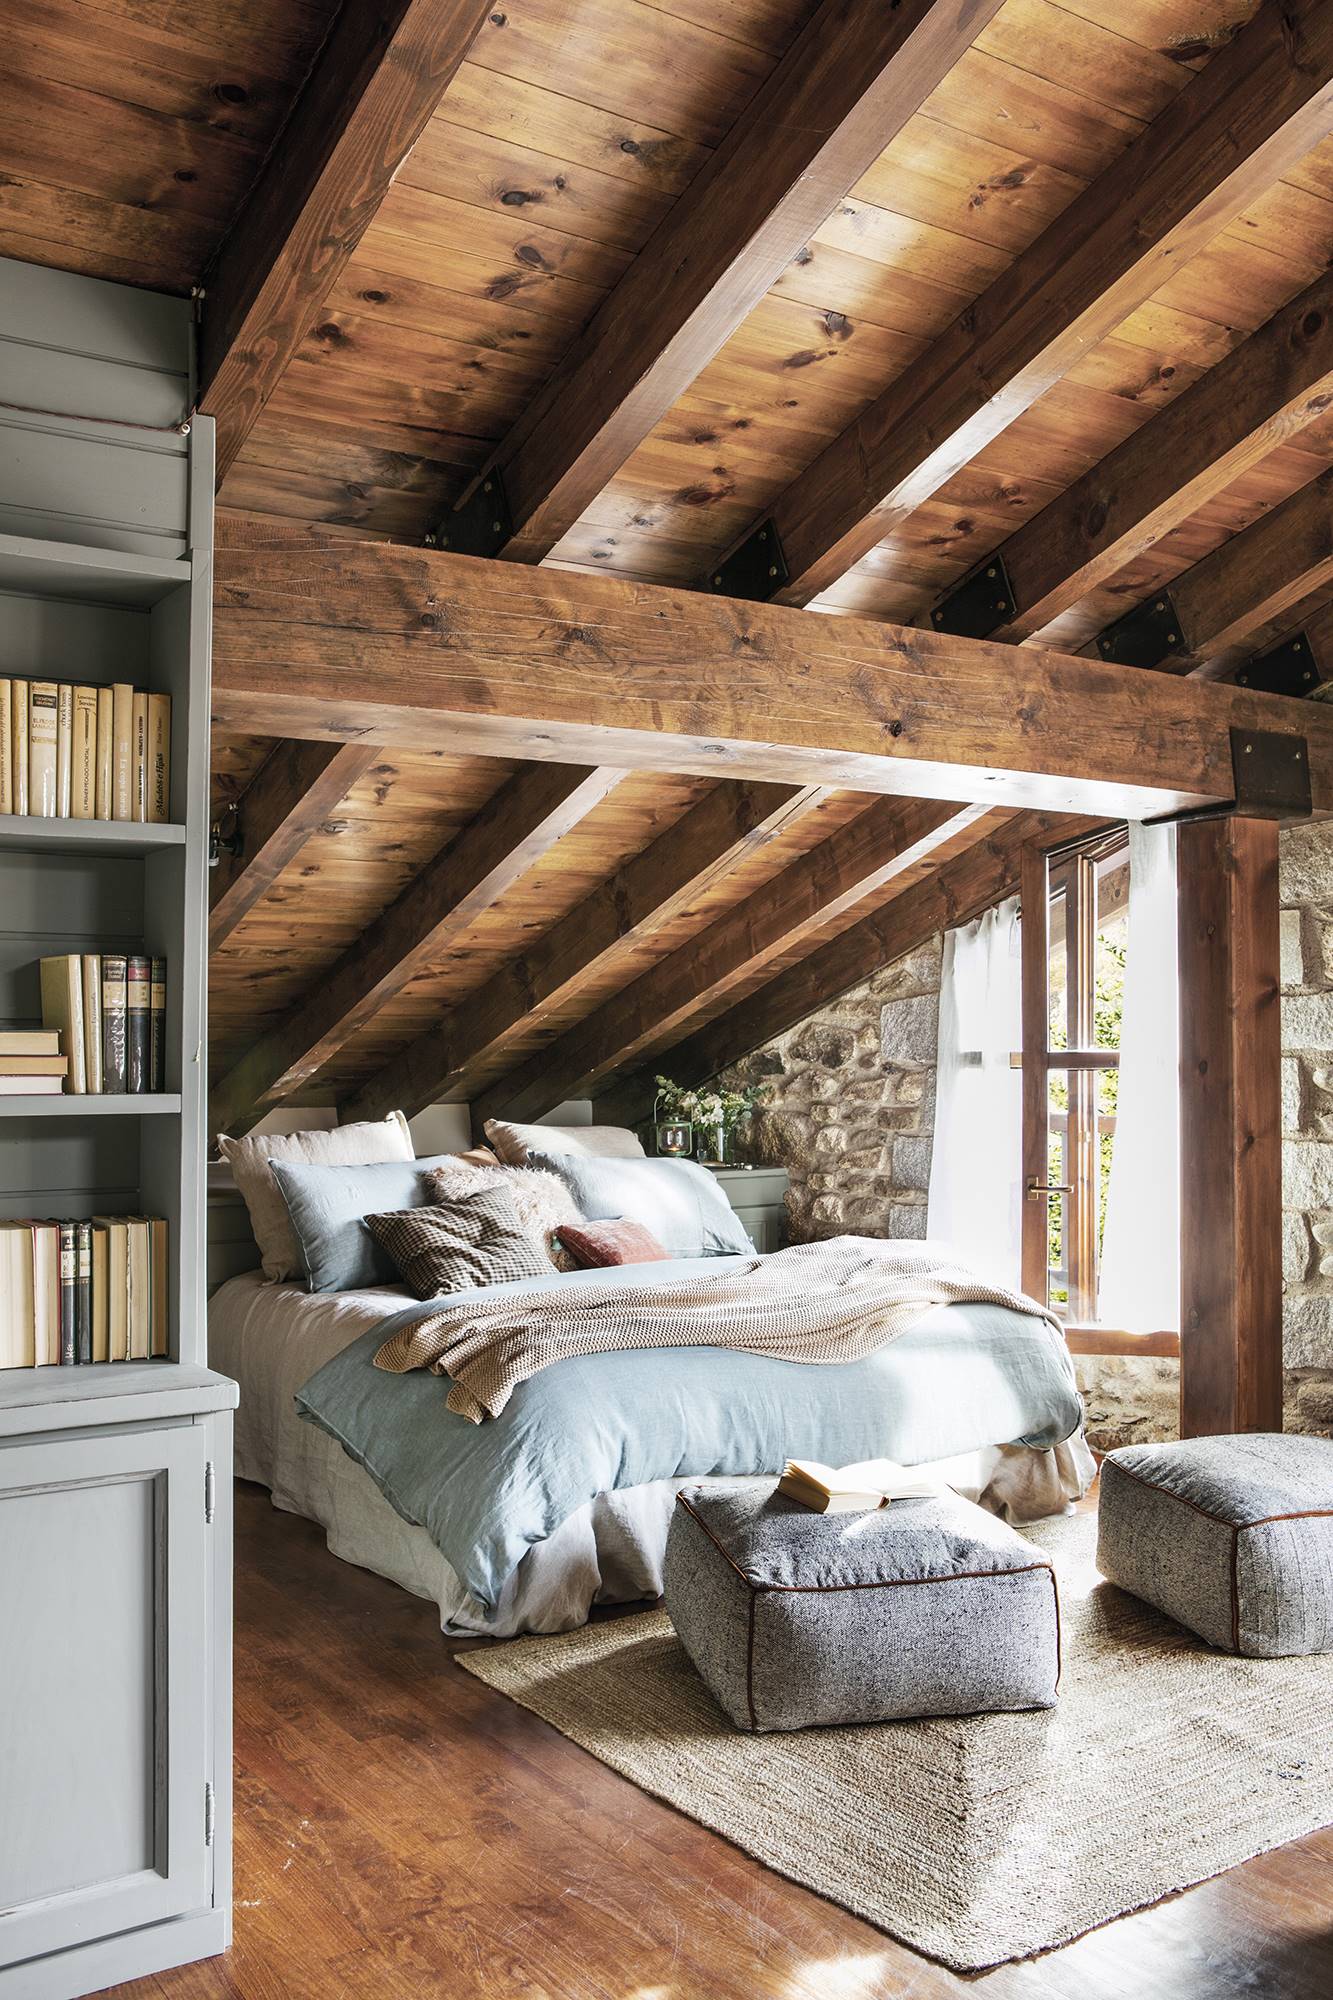 Dormitorio rústico con techos de madera abuhardillados y ropa de cama de lino. 